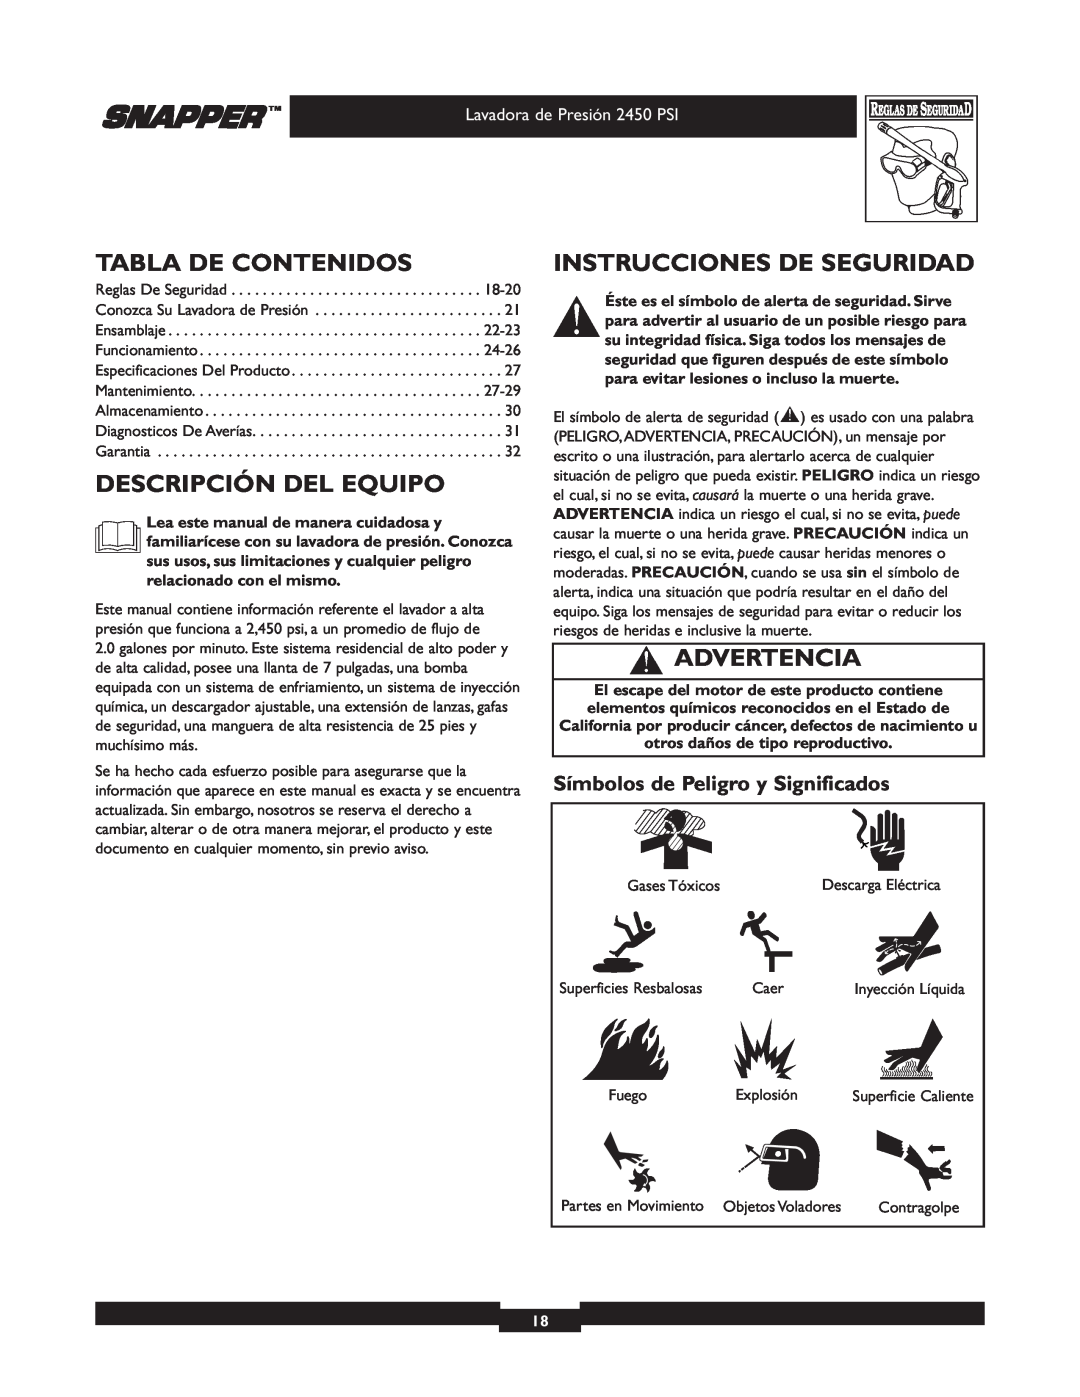 Snapper 020229 owner manual Tabla De Contenidos, Descripción Del Equipo, Instrucciones De Seguridad, Advertencia 